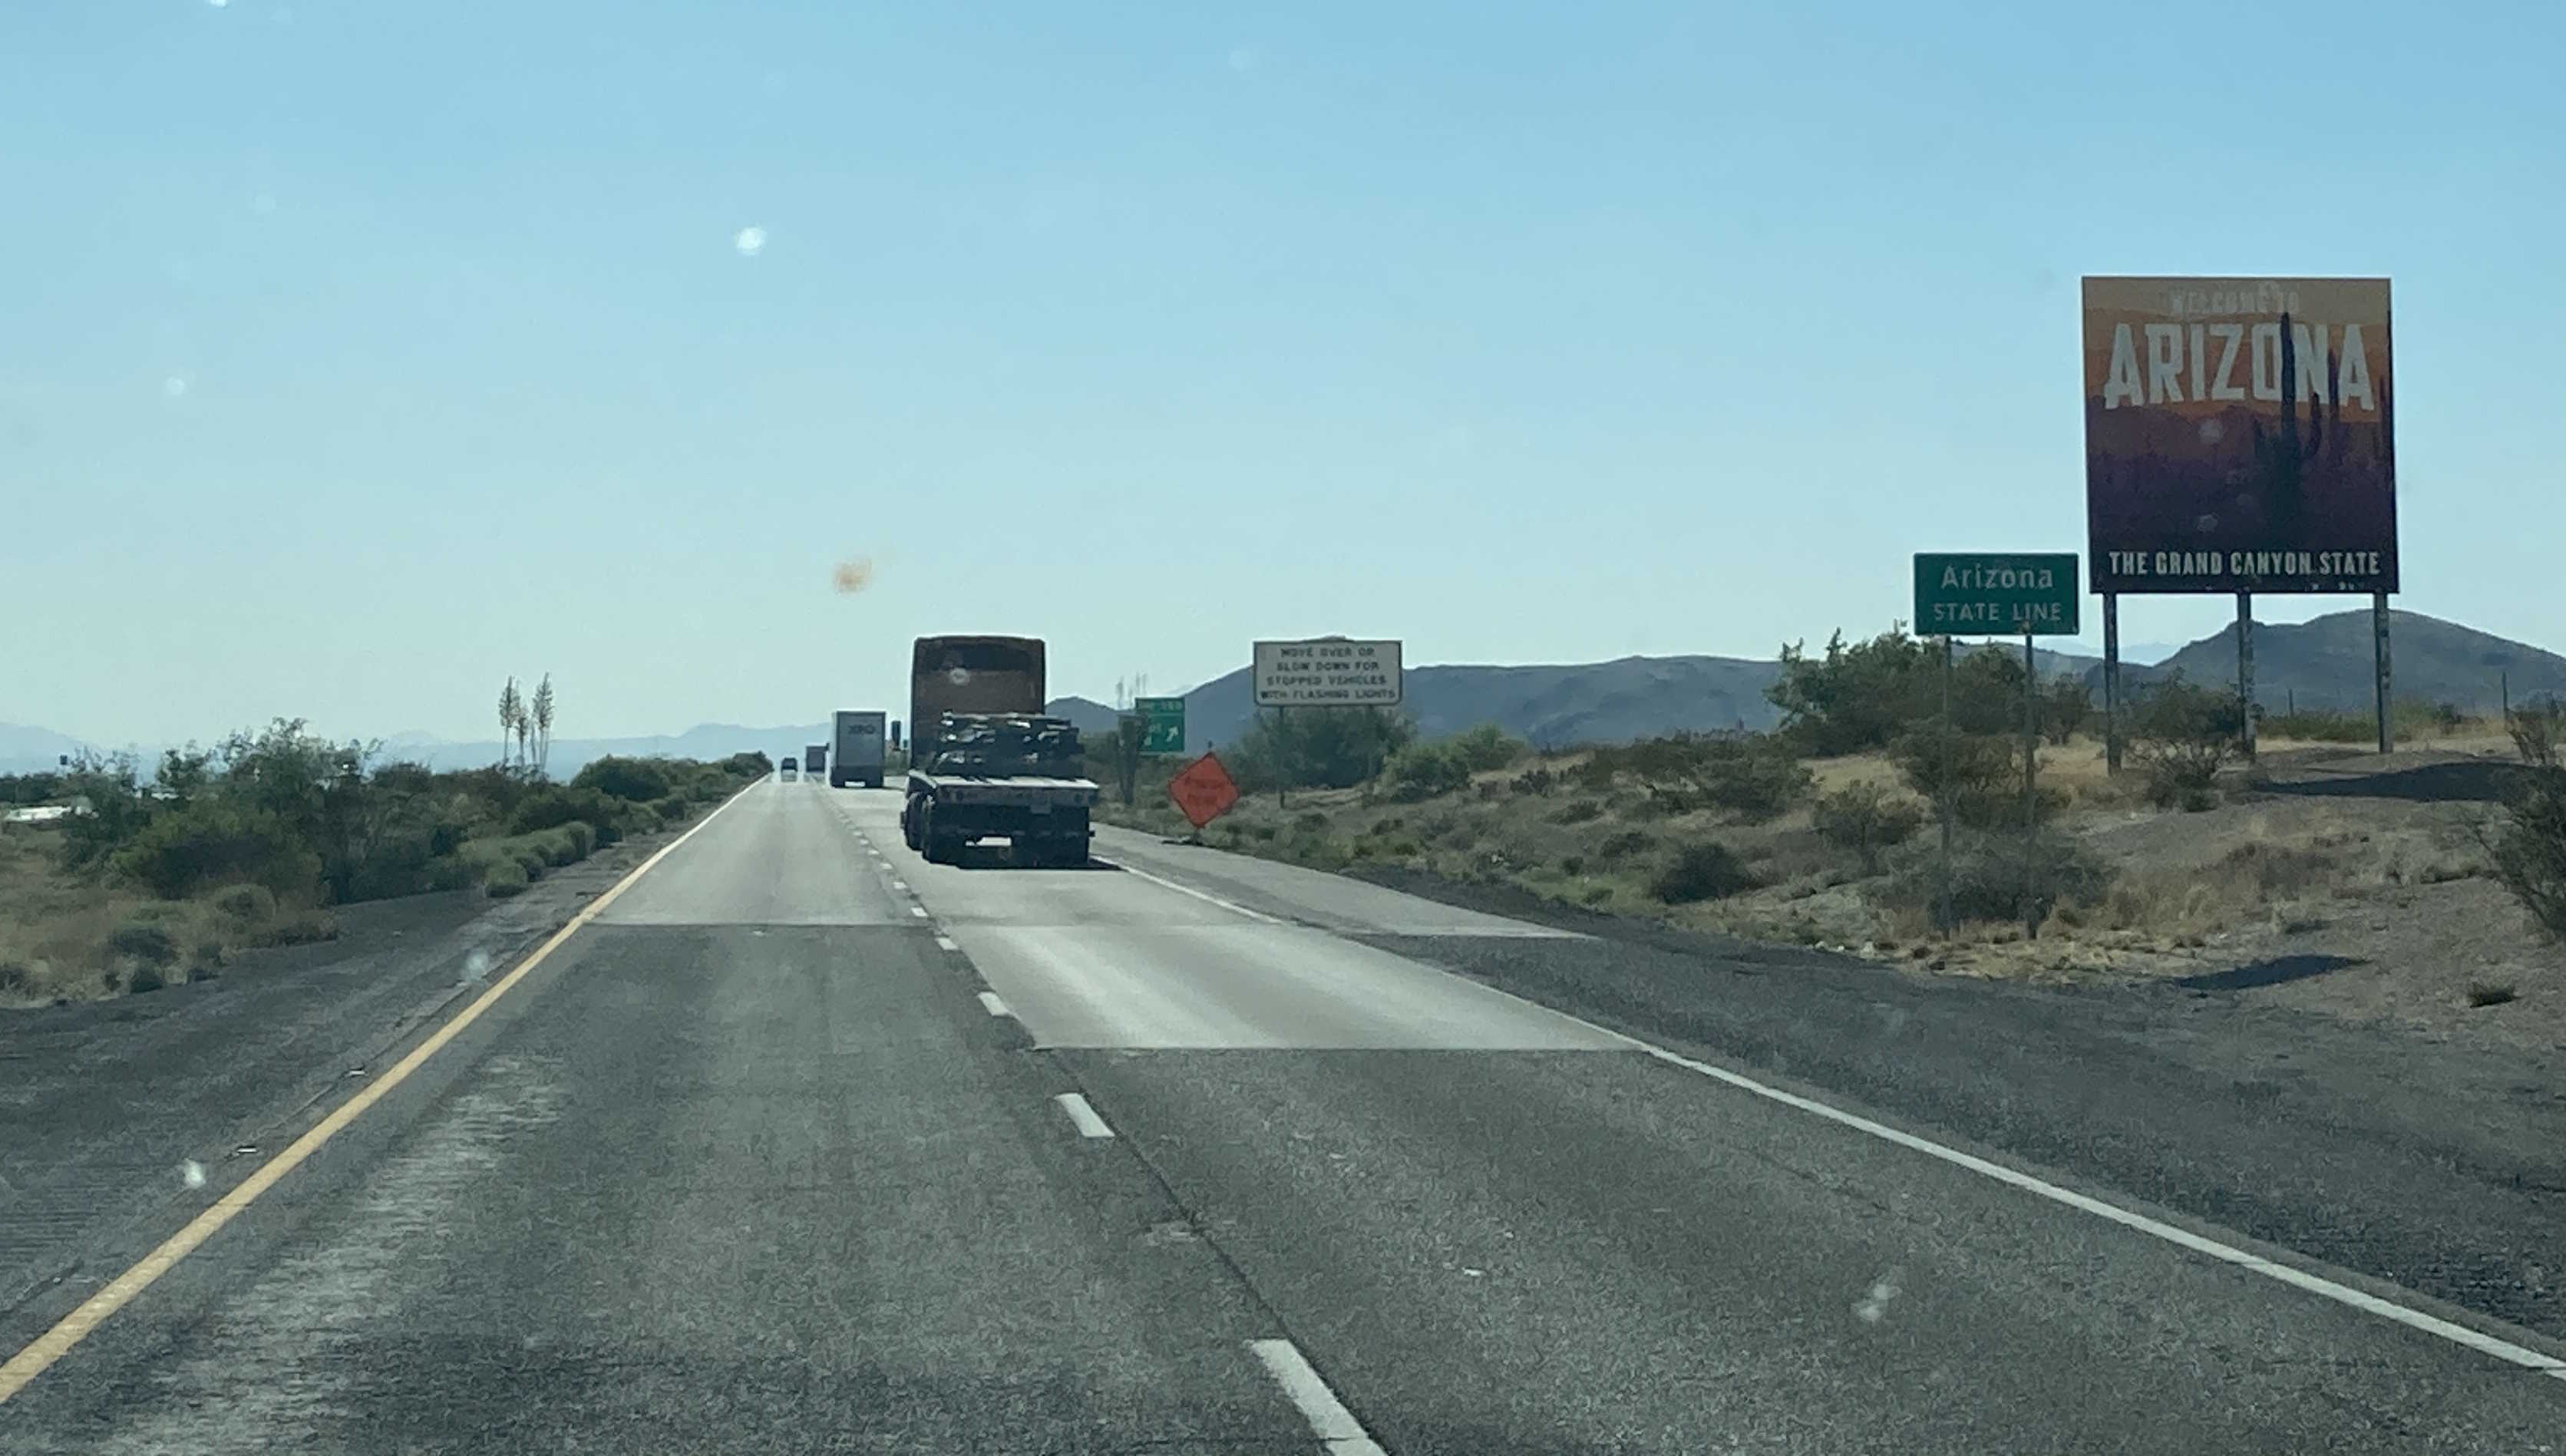 I-10 New Mexico